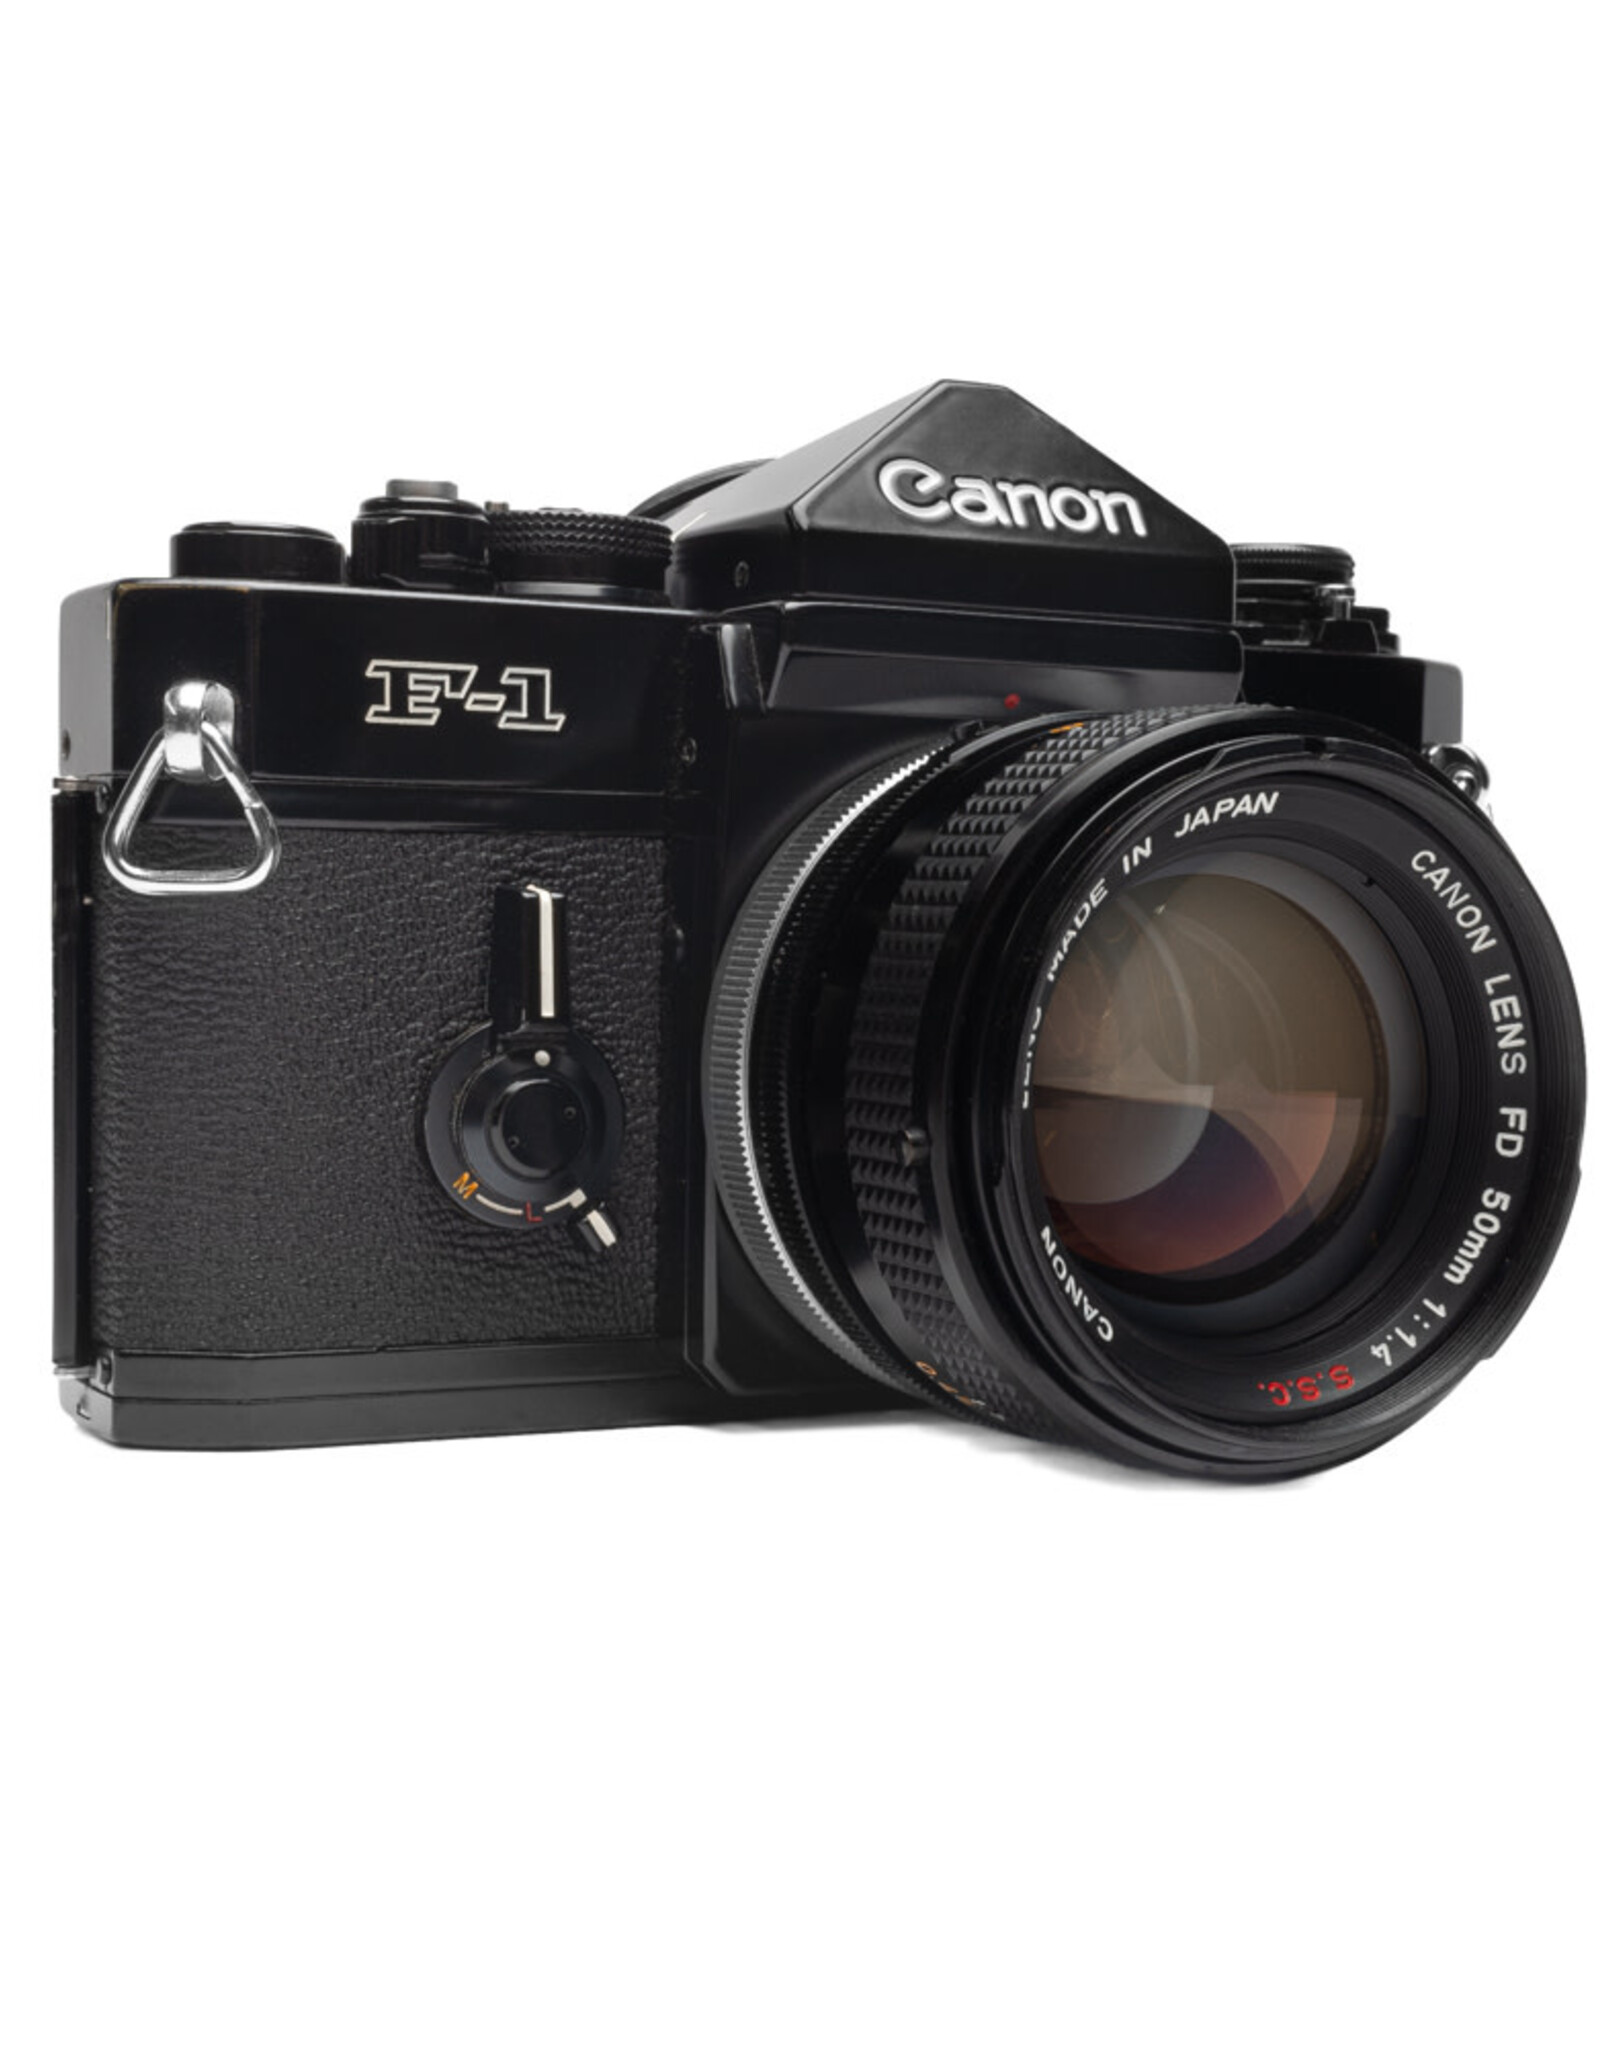 Canon Canon F1 Pro 35mm SLR Film Camera w/50mm f1.4 S.S.C. lens